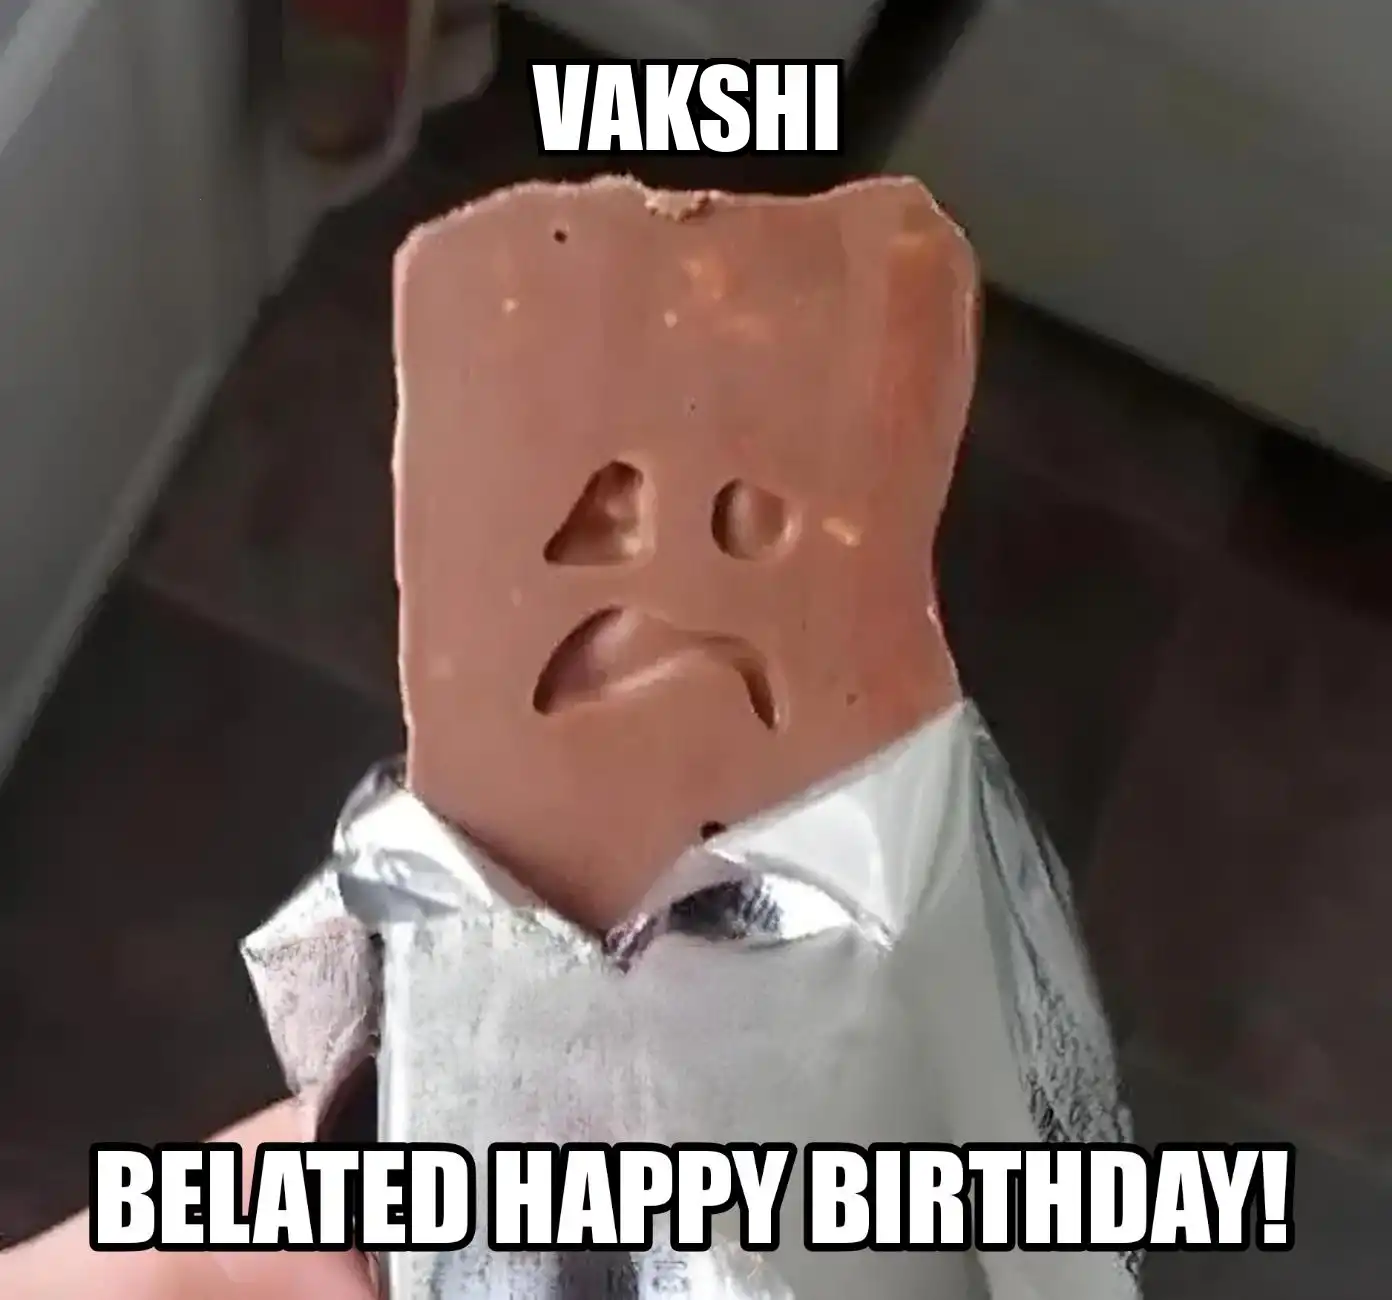 Happy Birthday Vakshi Belated Happy Birthday Meme